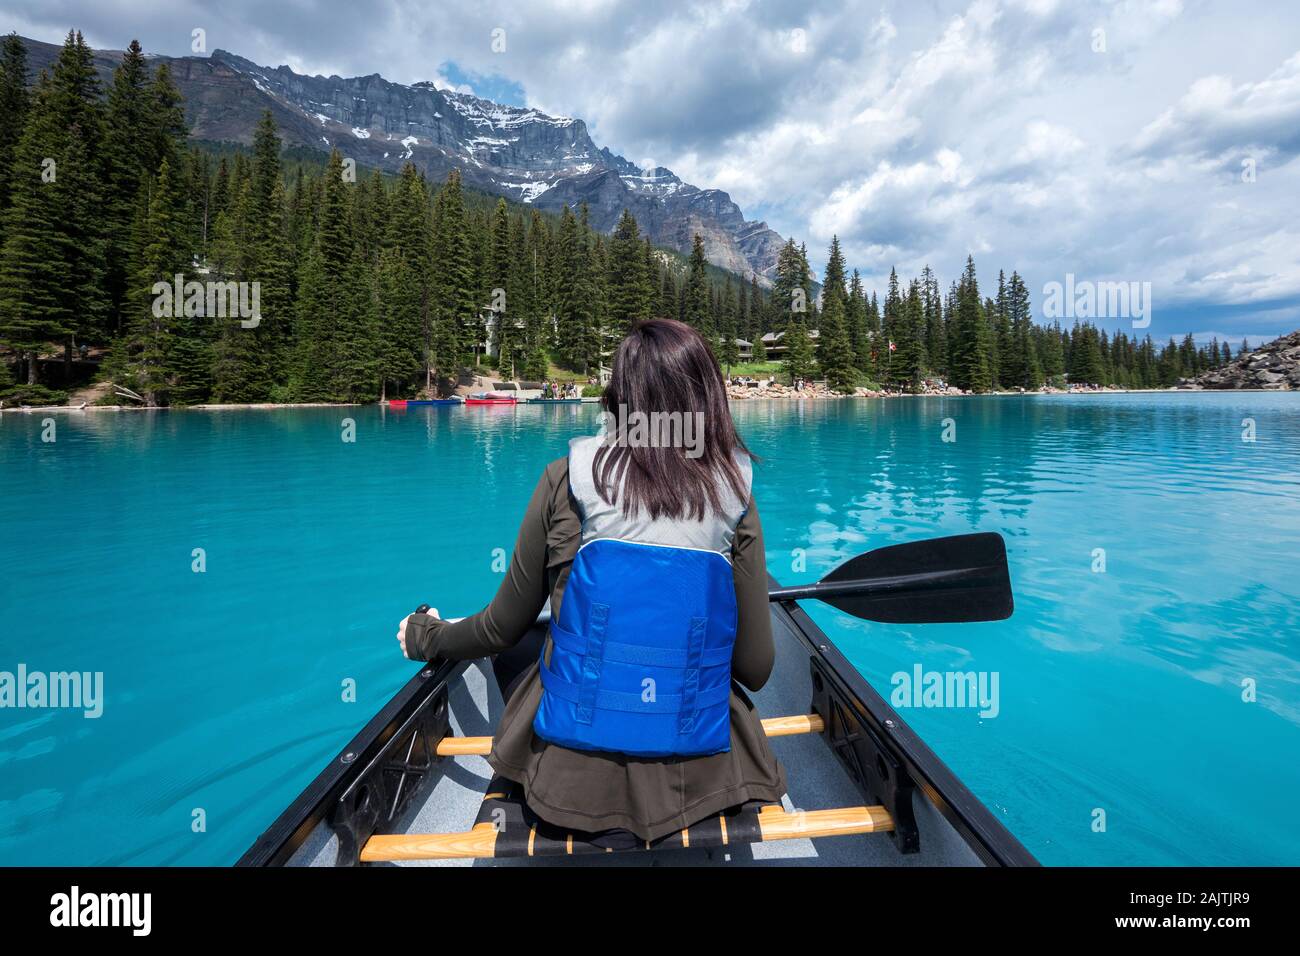 Turista canotaje en el lago Moraine durante el verano en el Parque Nacional Banff, Canadian Rockies, Alberta, Canadá. Foto de stock